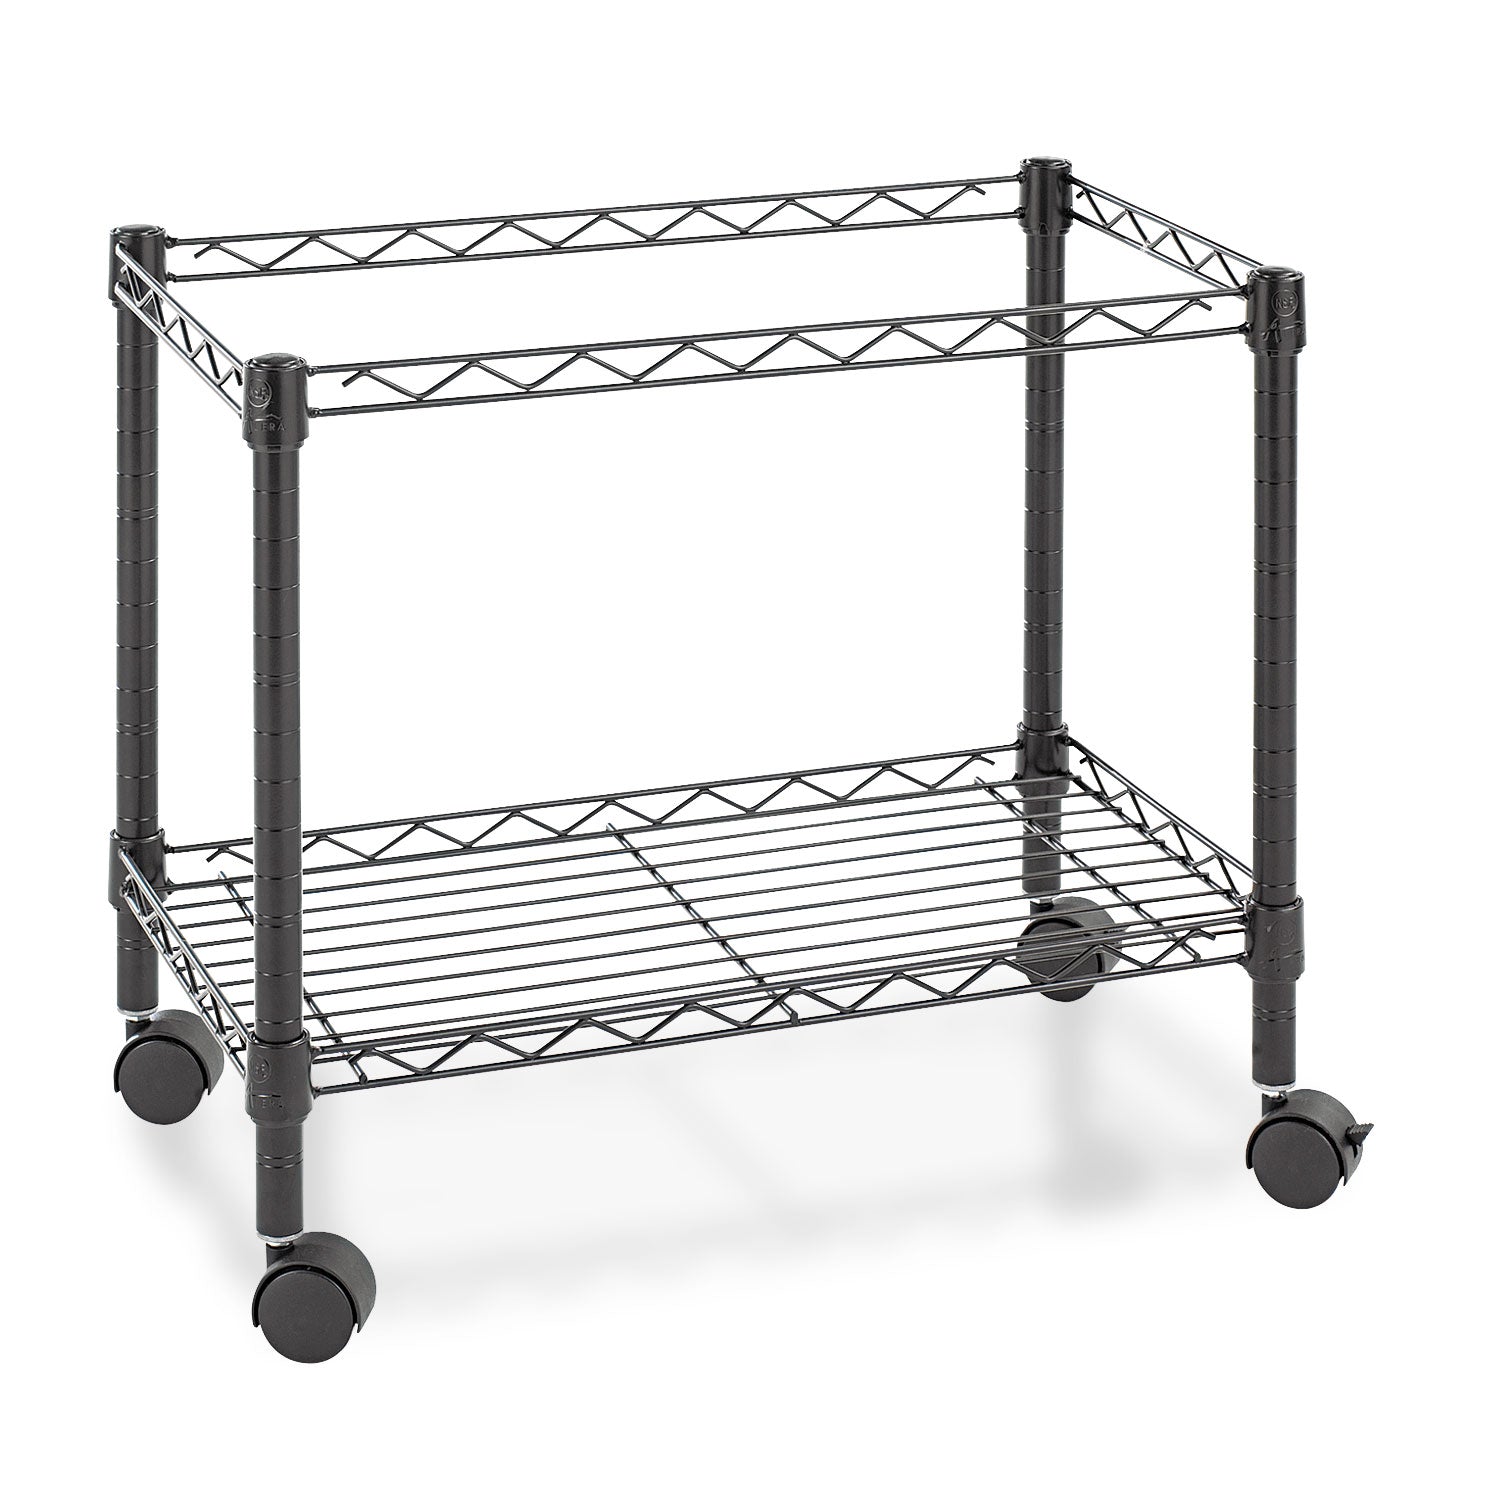 One-Tier File Cart for Side-to-Side Filing, Metal, 1 Shelf, 1 Bin, 24" x 14" x 21", Black - 